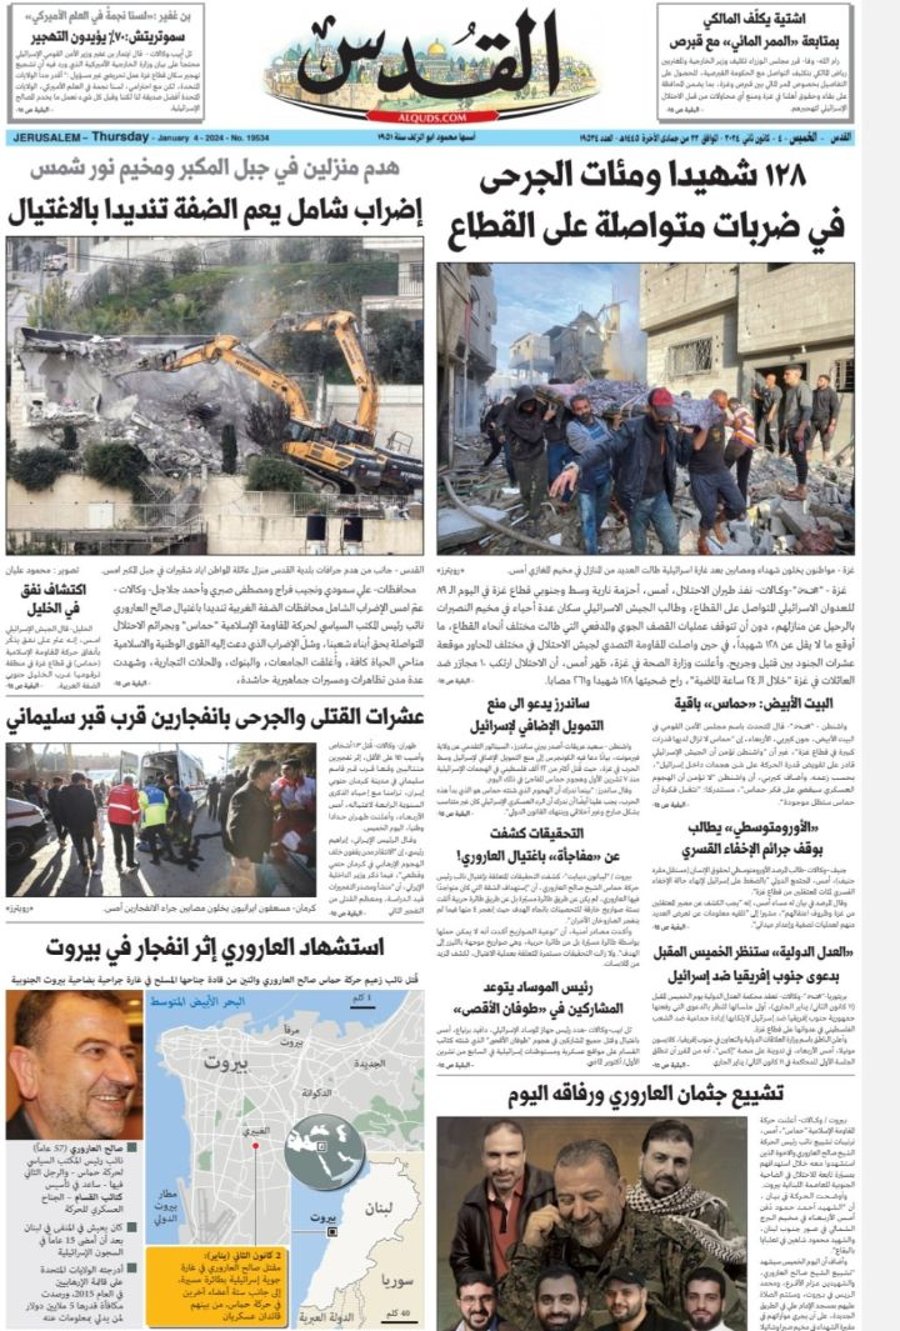 עיתון פלסטיני מקונן על חורבן עזה: "פרק חדש לנכבה"